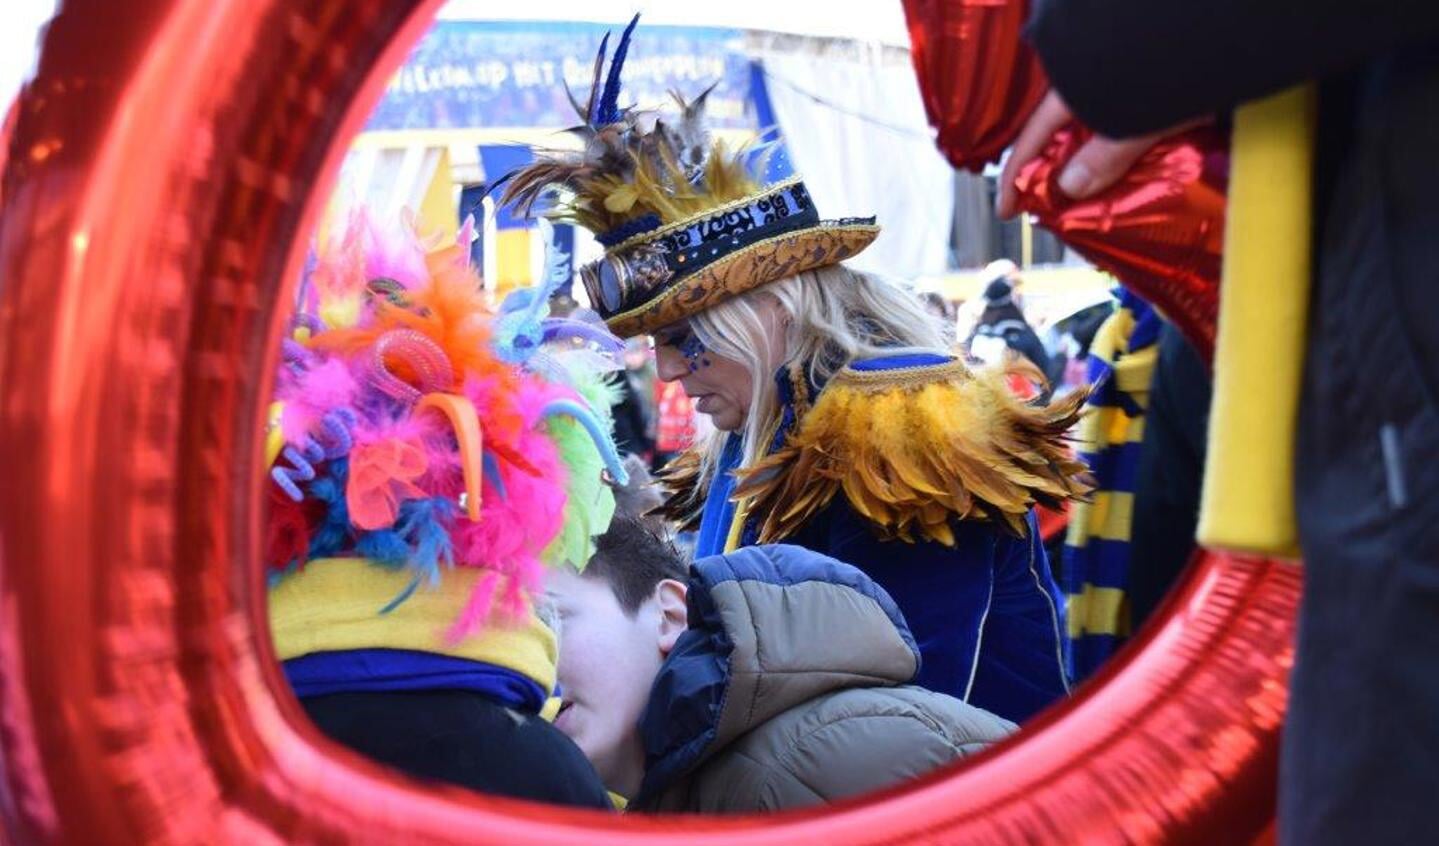 Carnaval in Oss. (Foto: Jo van Schaijk)